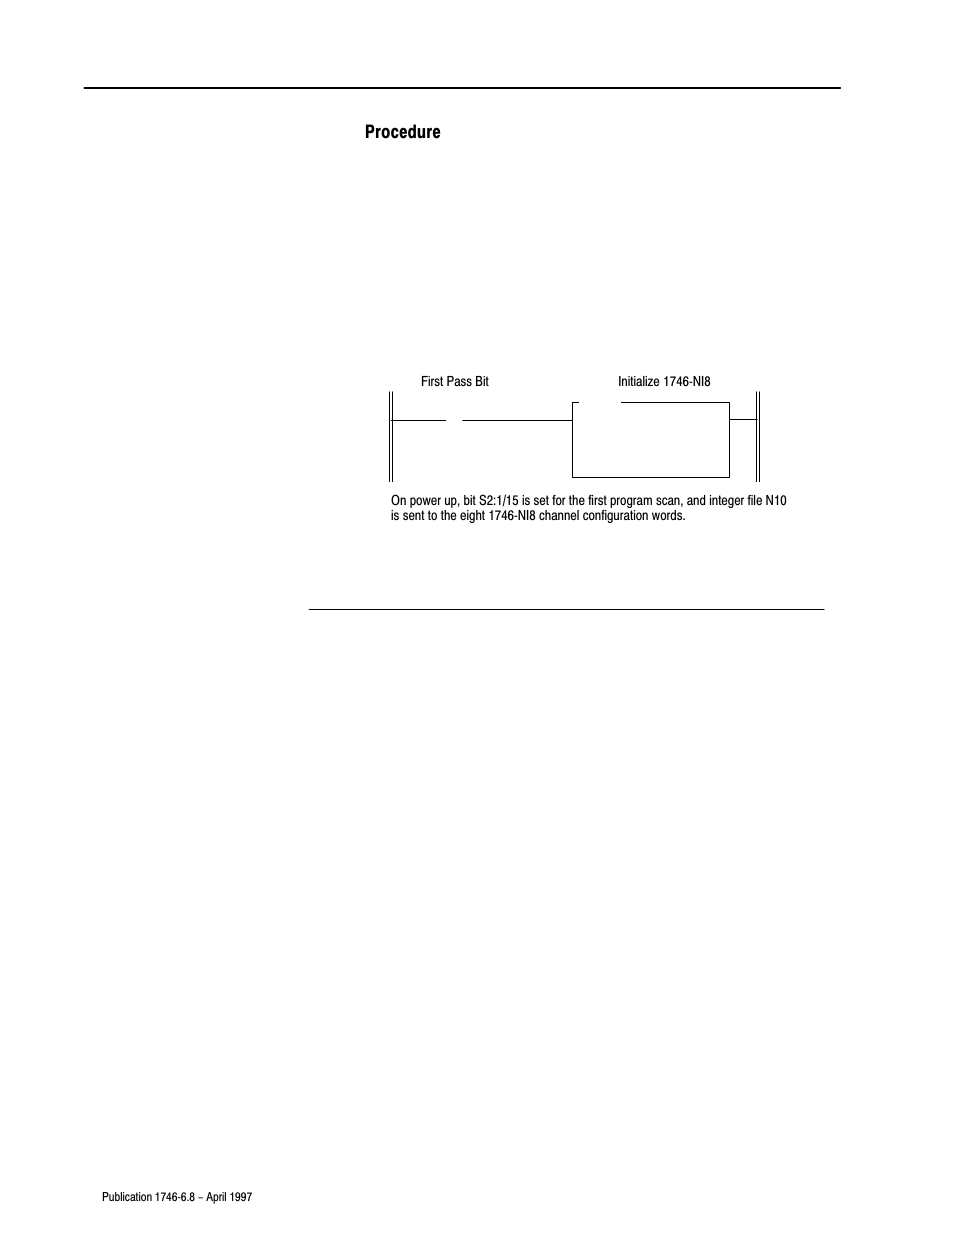 Procedure | Rockwell Automation 1746-NI8 SLC 500 Analog Input Modules